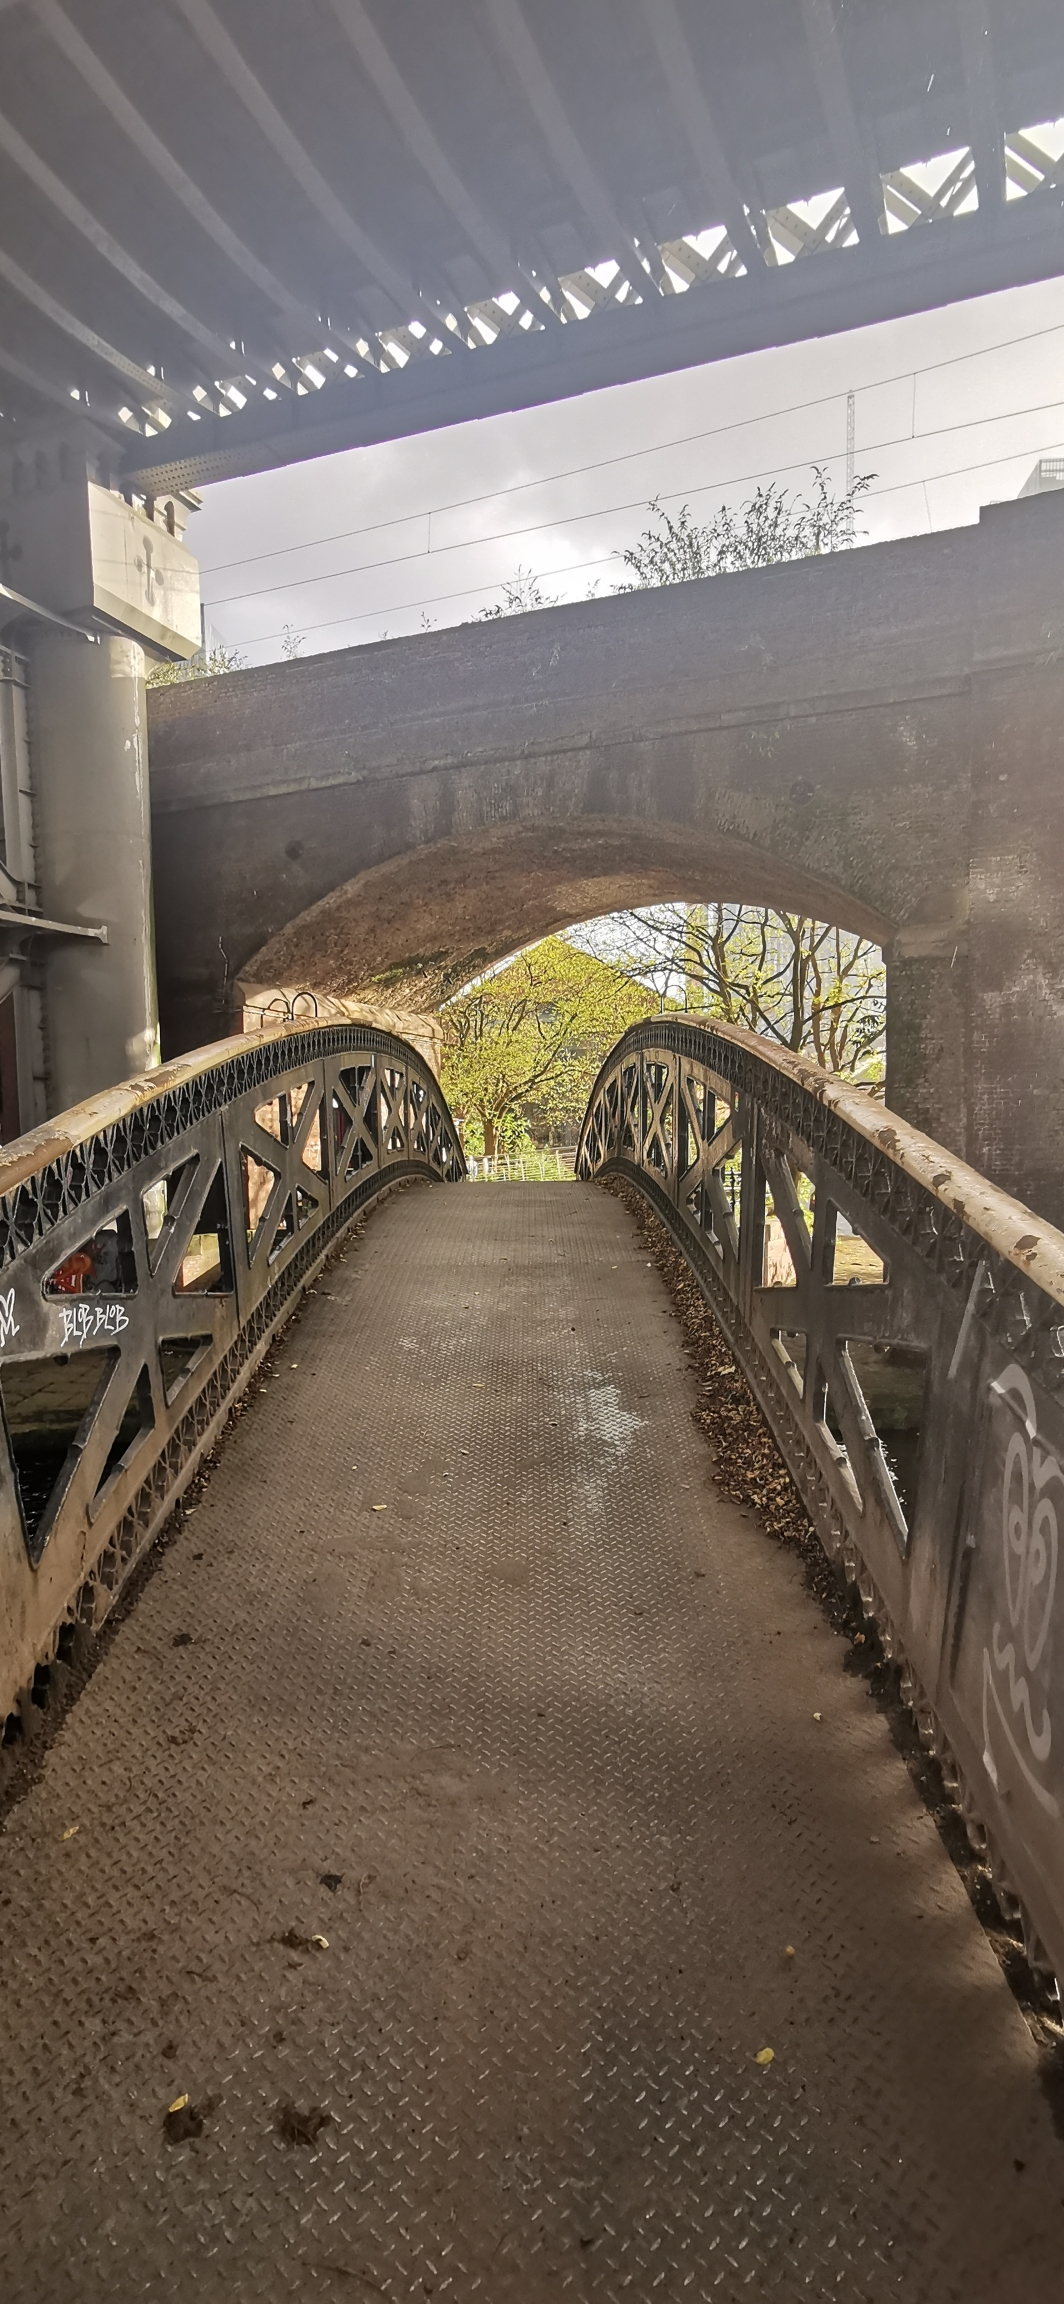 Photo taken between Castlefield Urban Heritage Park and Castlefield Viaduct